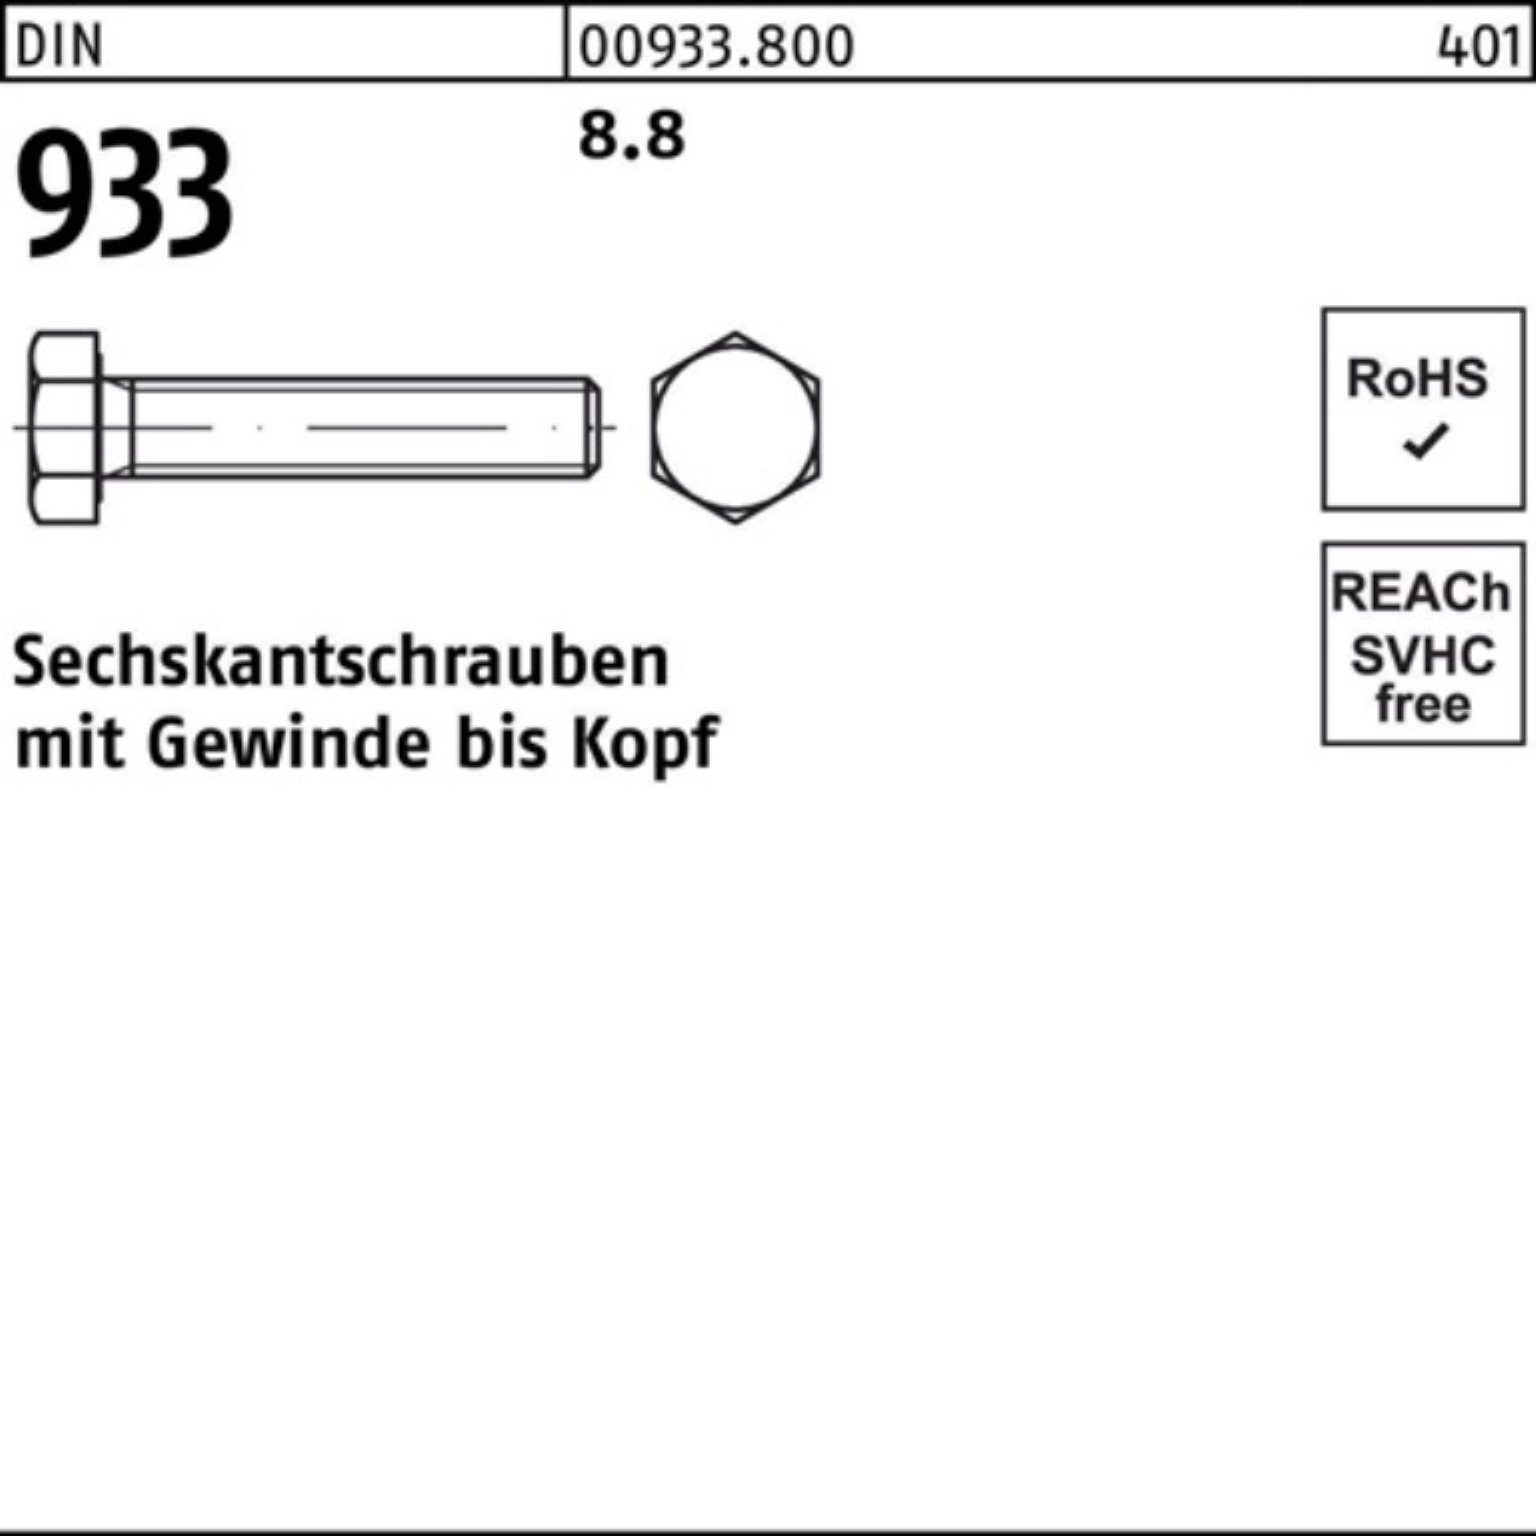 933 DIN VG 18 M8x 200er DIN Pack Sechskantschraube 200 8.8 Sechskantschraube Reyher 933 Stück